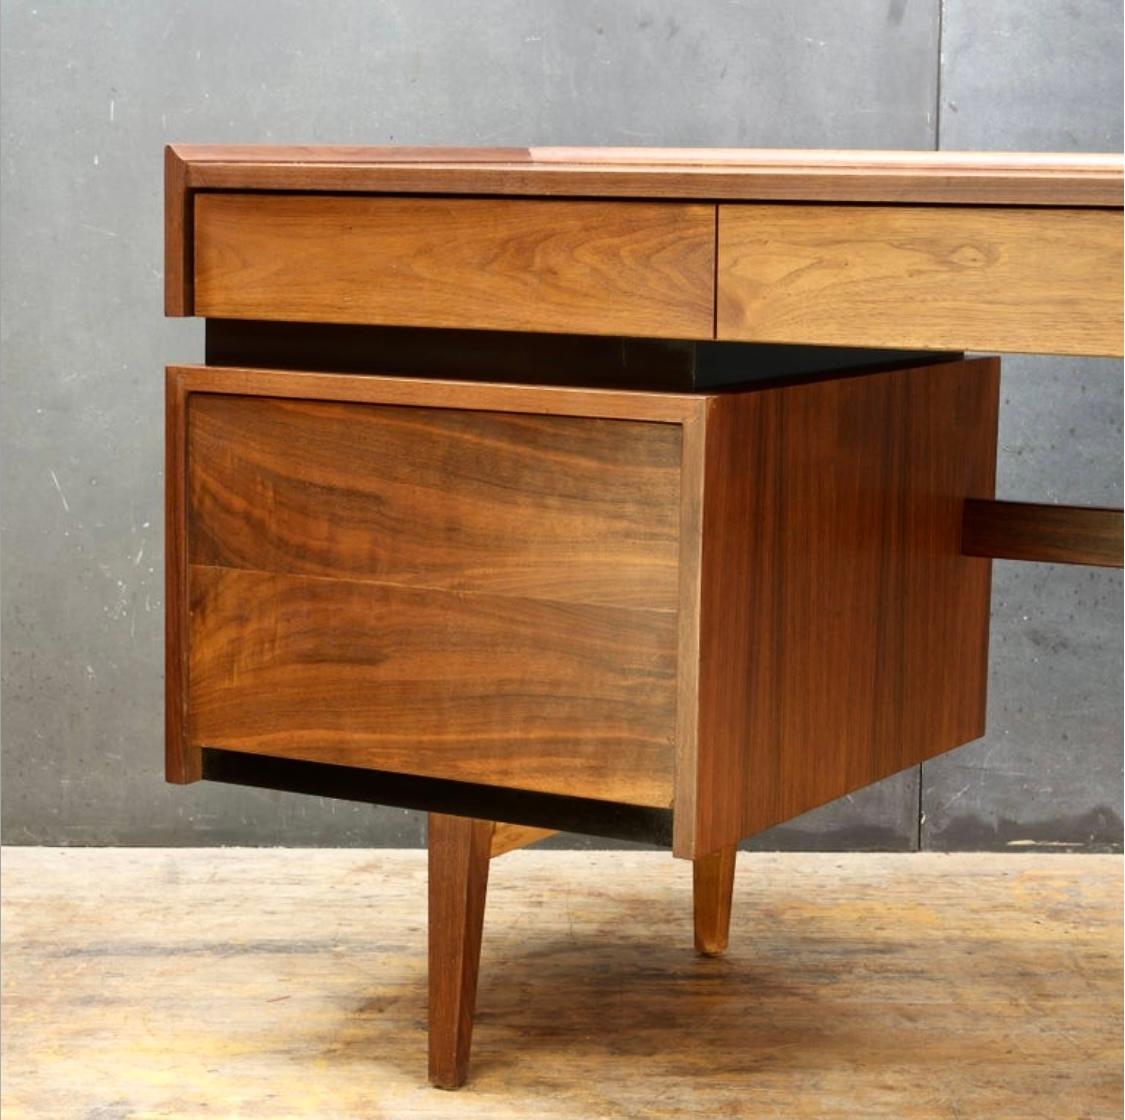 Merton Gershun war ein amerikanischer Möbeldesigner des frühen 20. Jahrhunderts, bekannt für das Entwerfen einiger der frühesten modernen Möbelserien in den USA und das Bestreben, schickes, modernes Design für den täglichen amerikanischen